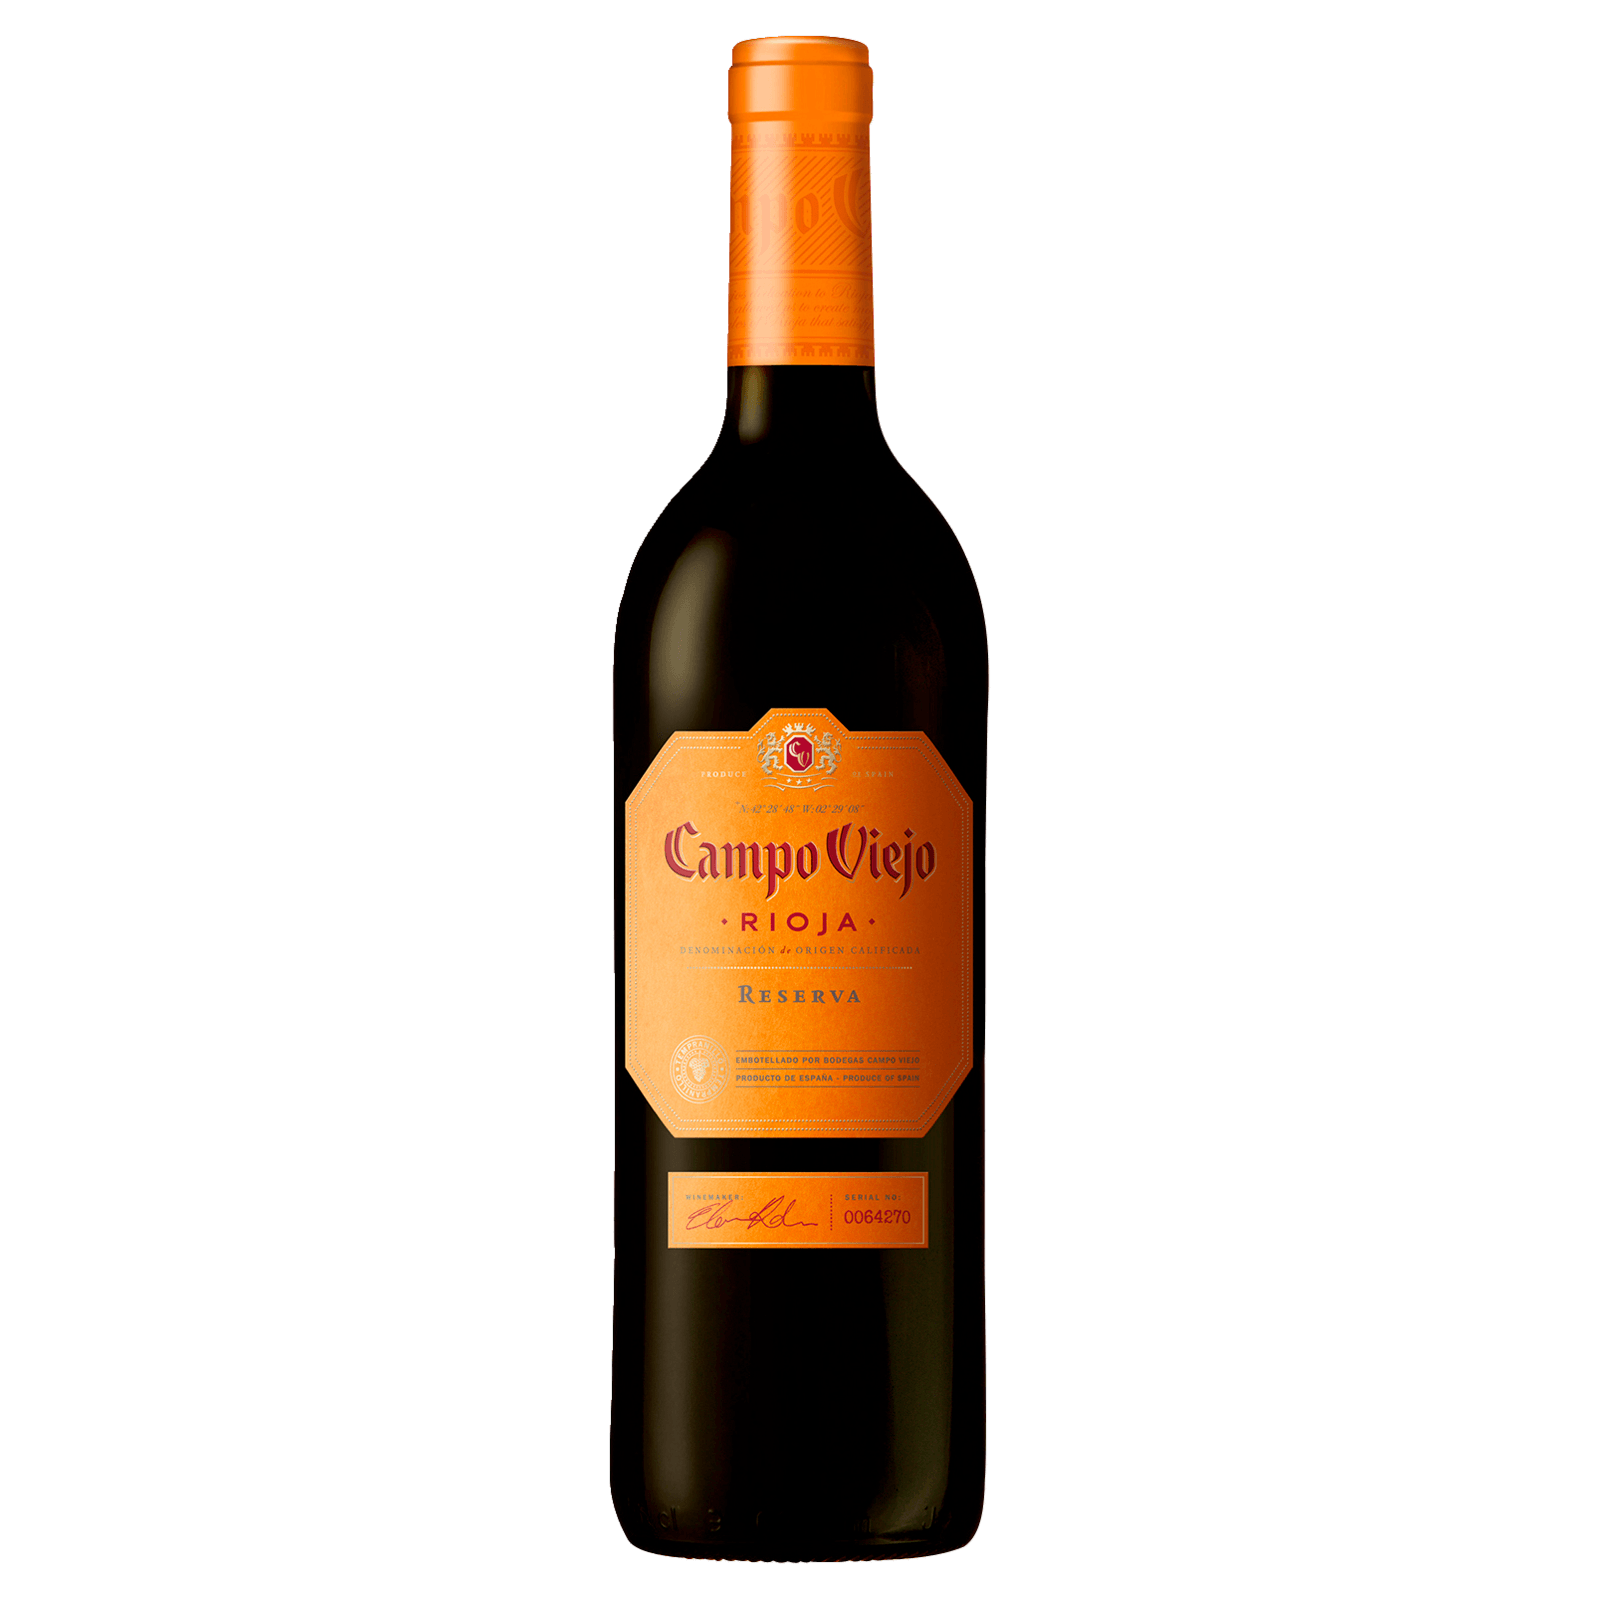 Rioja 2017 4,99€ von DOCa Cepa Lidl Lebrel für Reserva trocken, Rotwein